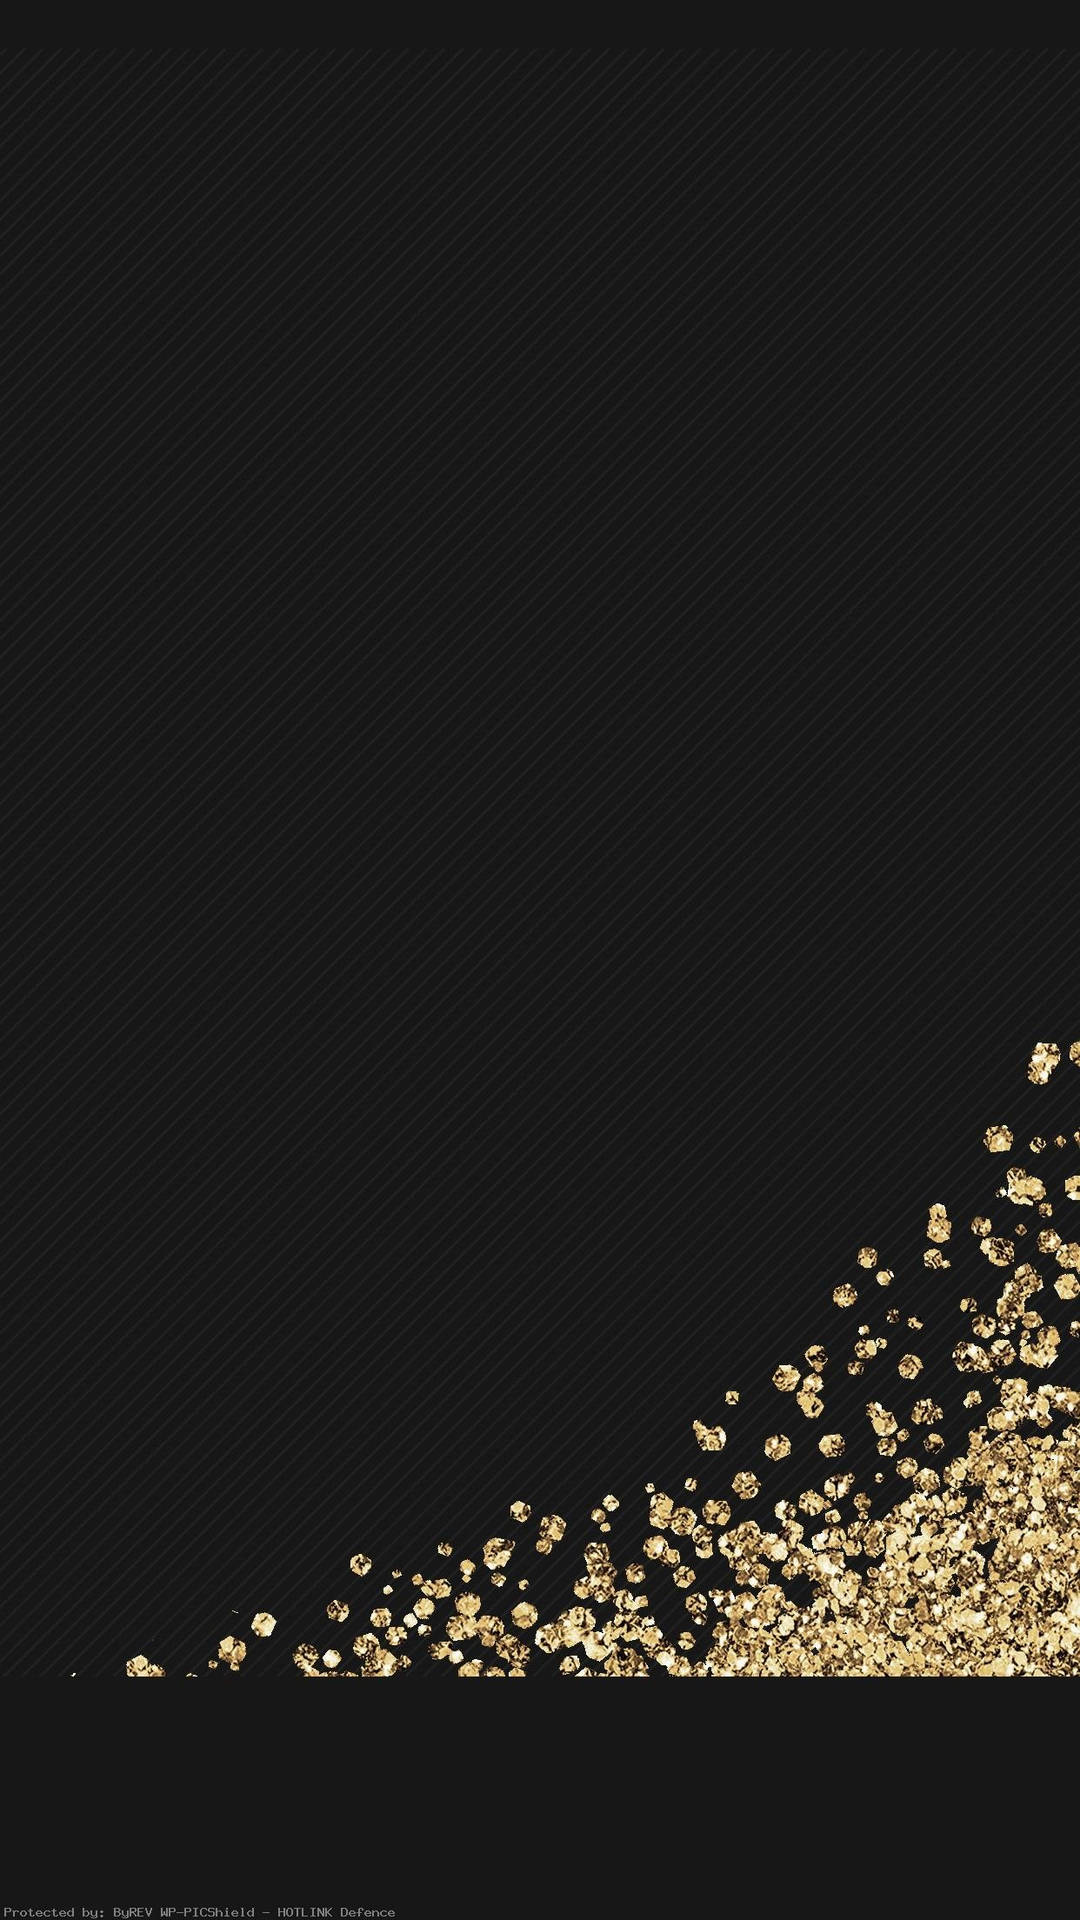 Gold Glitter Black Backdrop For Phone Wallpaper